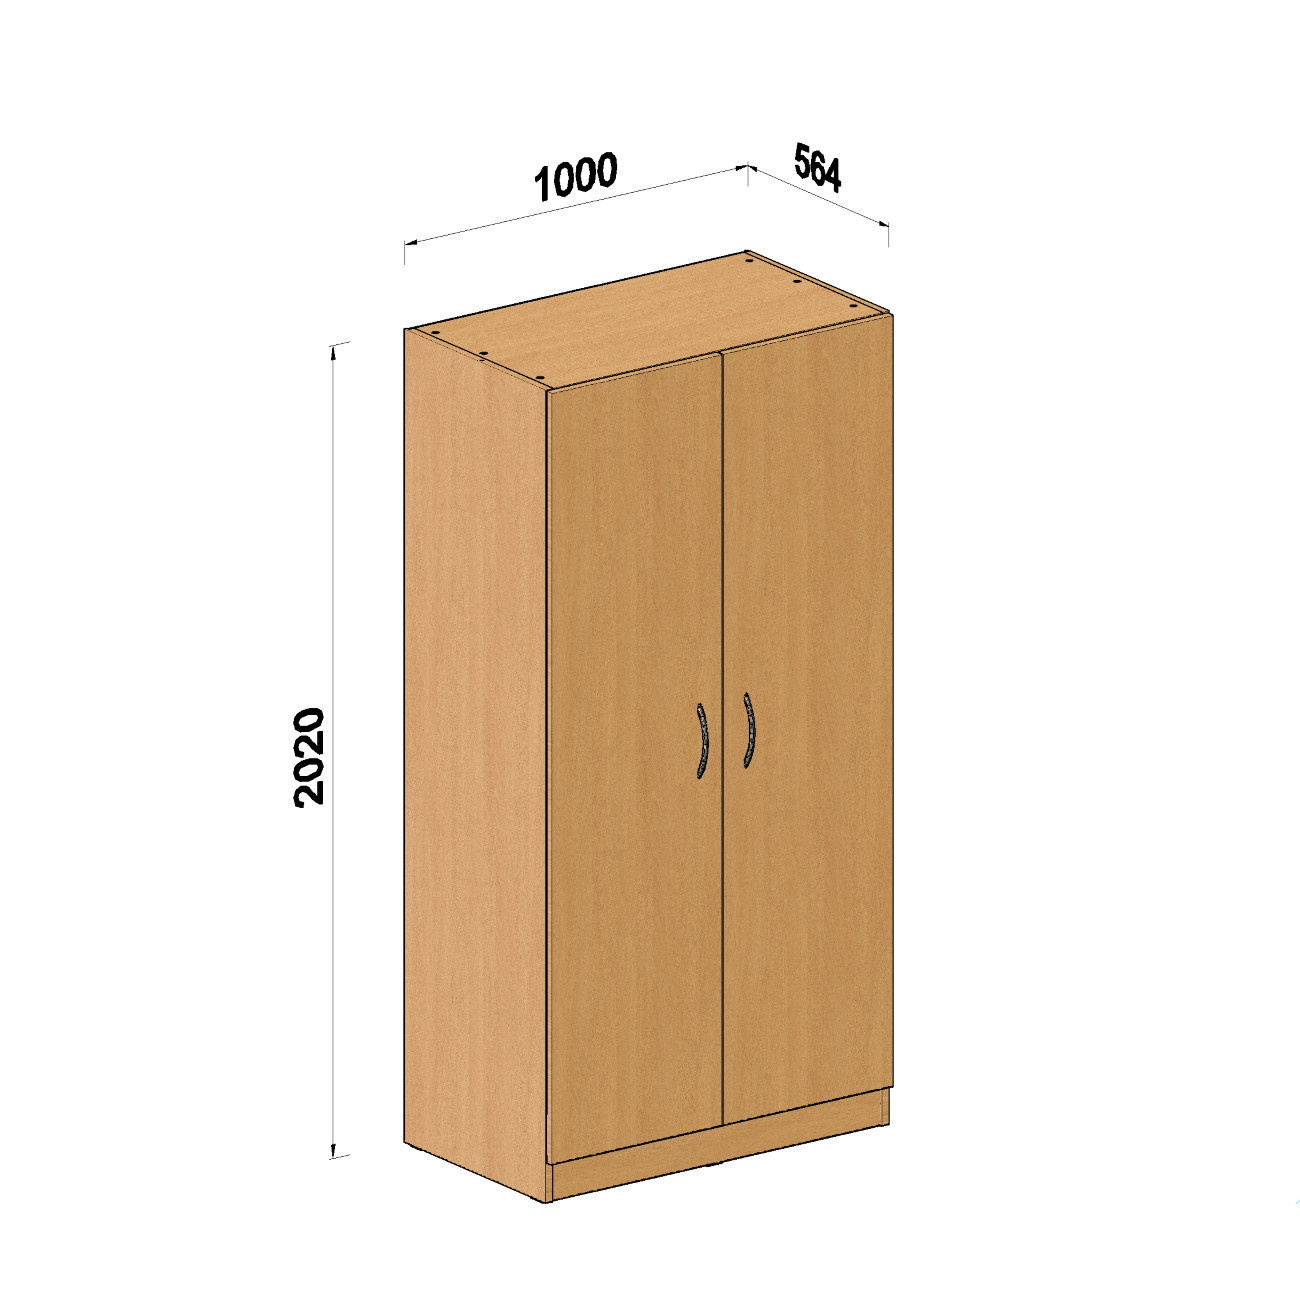 Kleiderschrank Modell 2 | EXPRESS Lieferung | Türen verschließbar | Wertfach